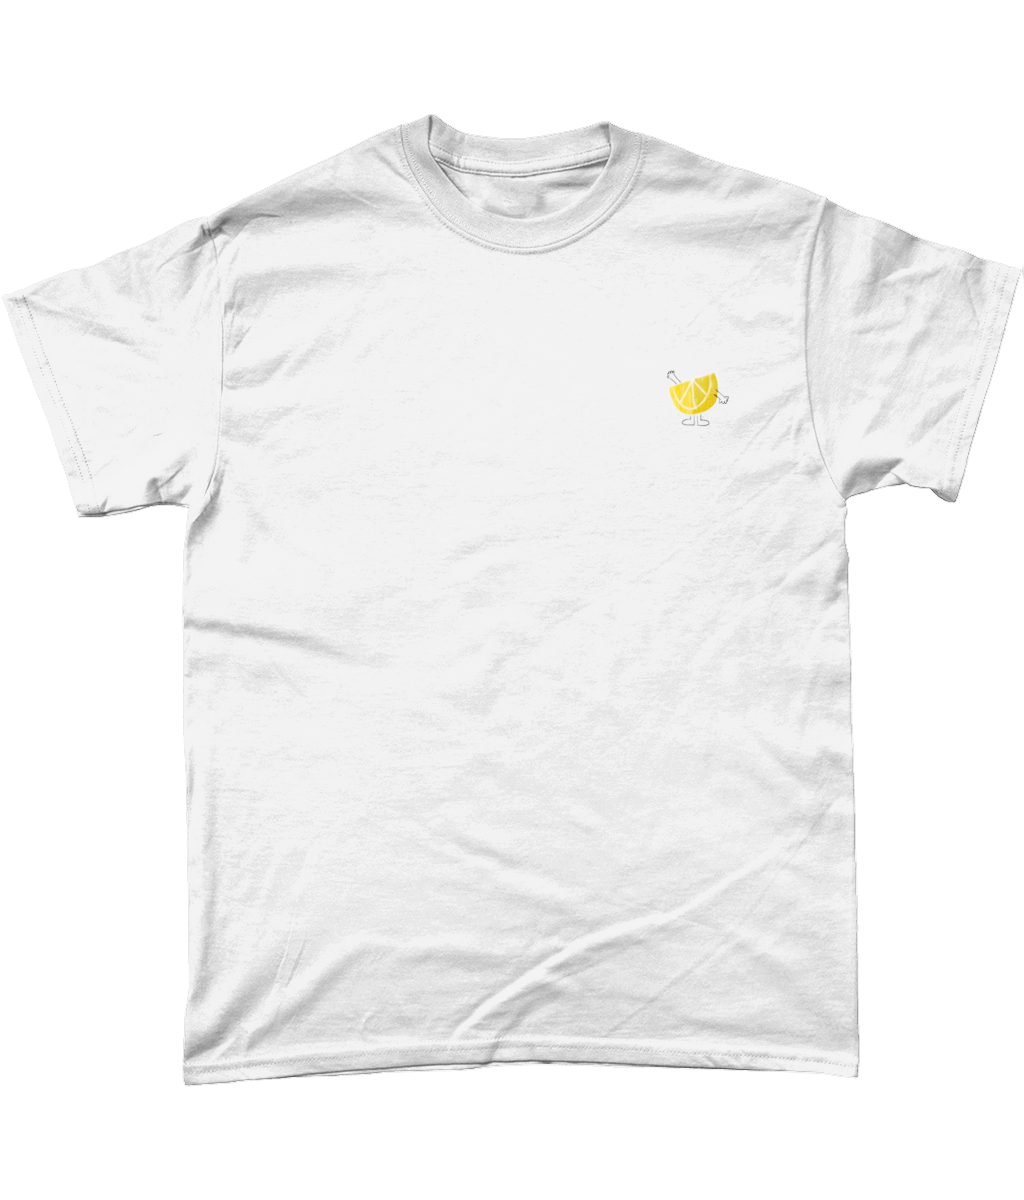 Fanta Lemon T-Shirt